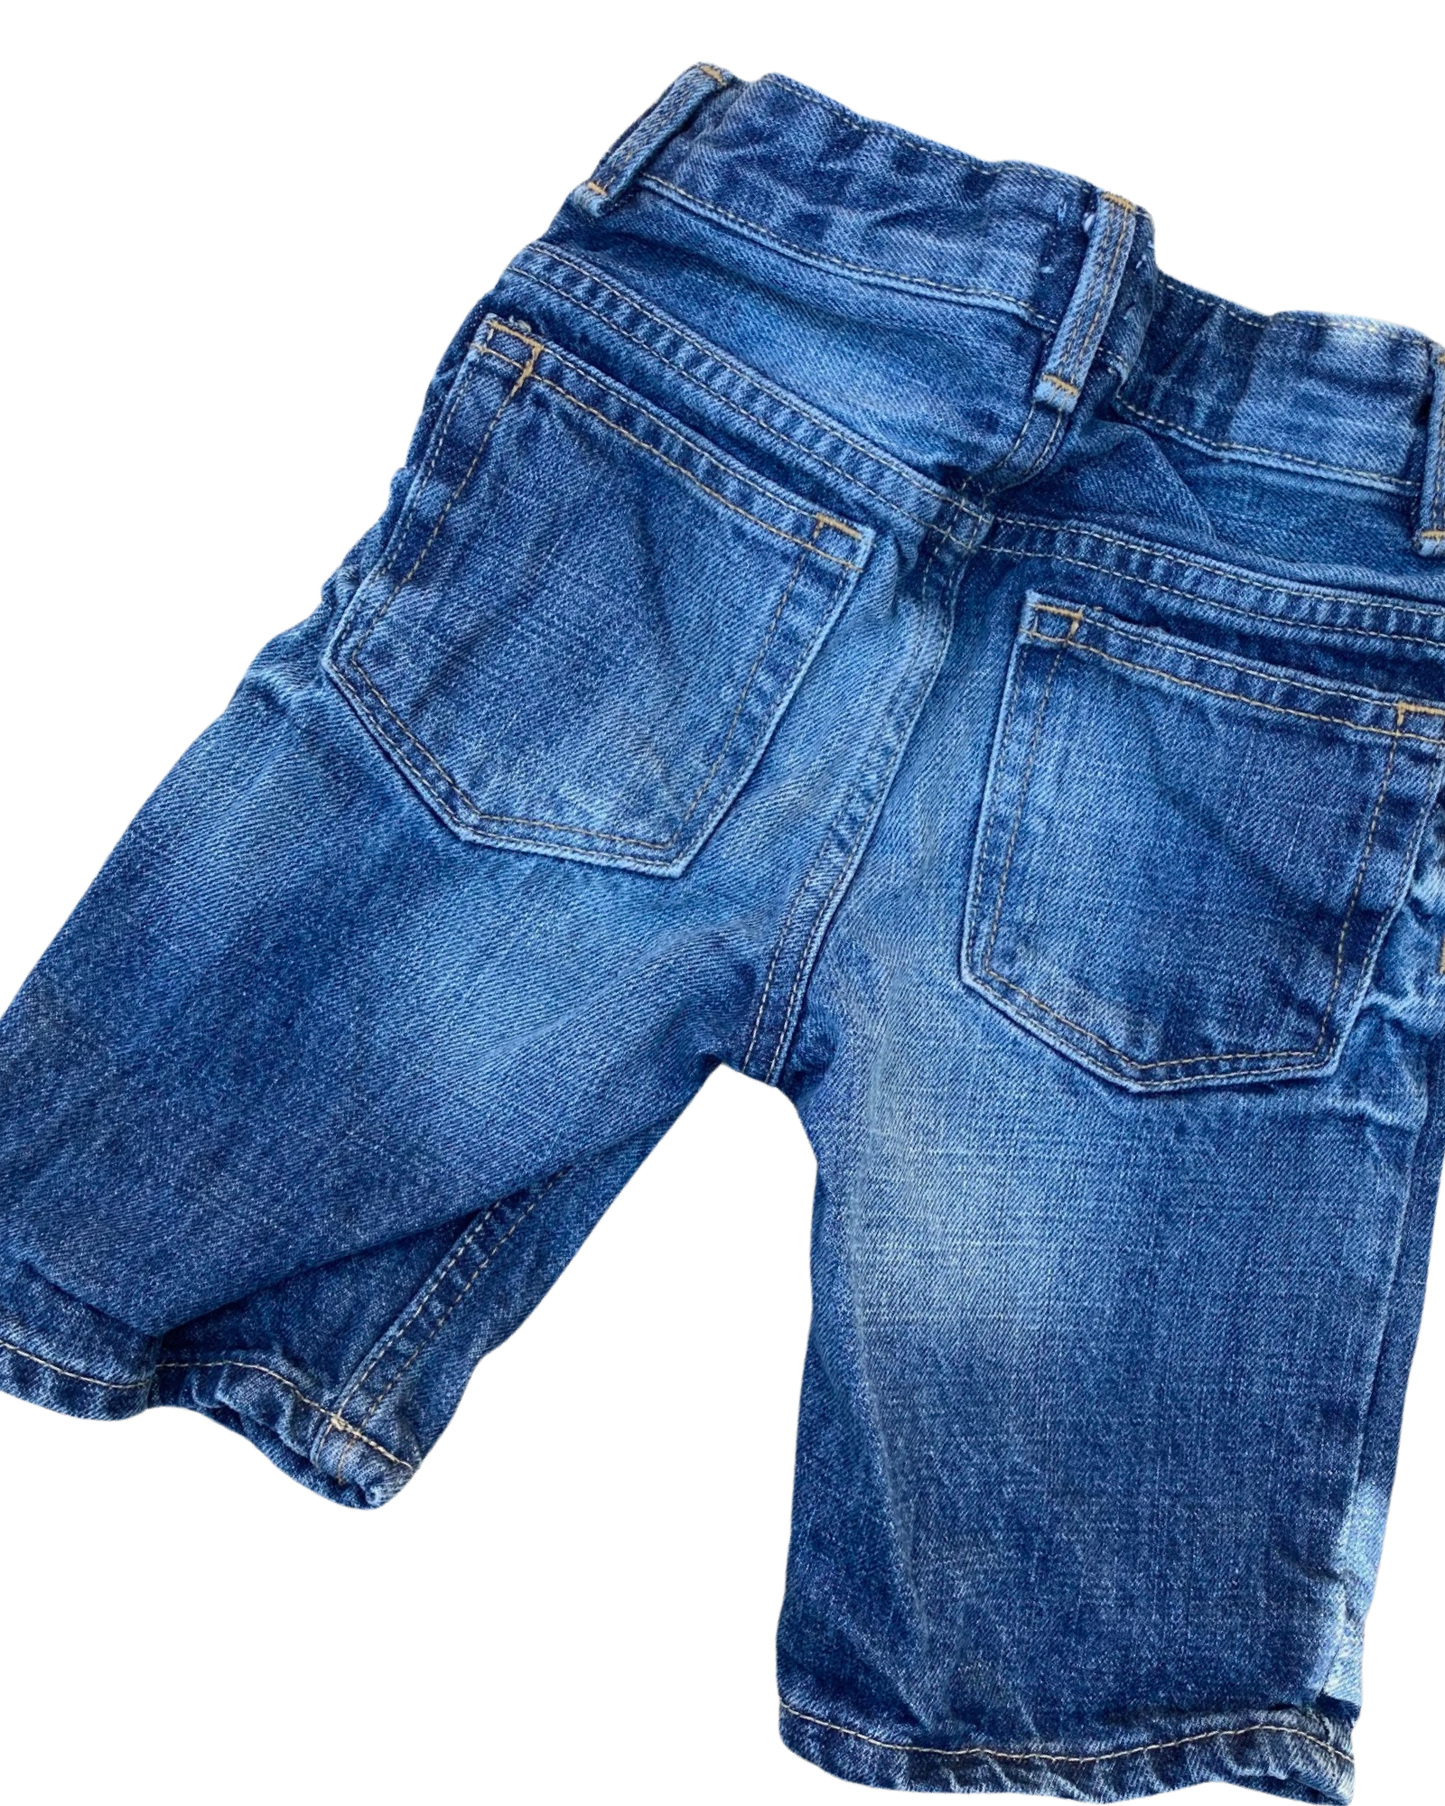 Baby Gap dark wash denim shorts (3-4yrs)